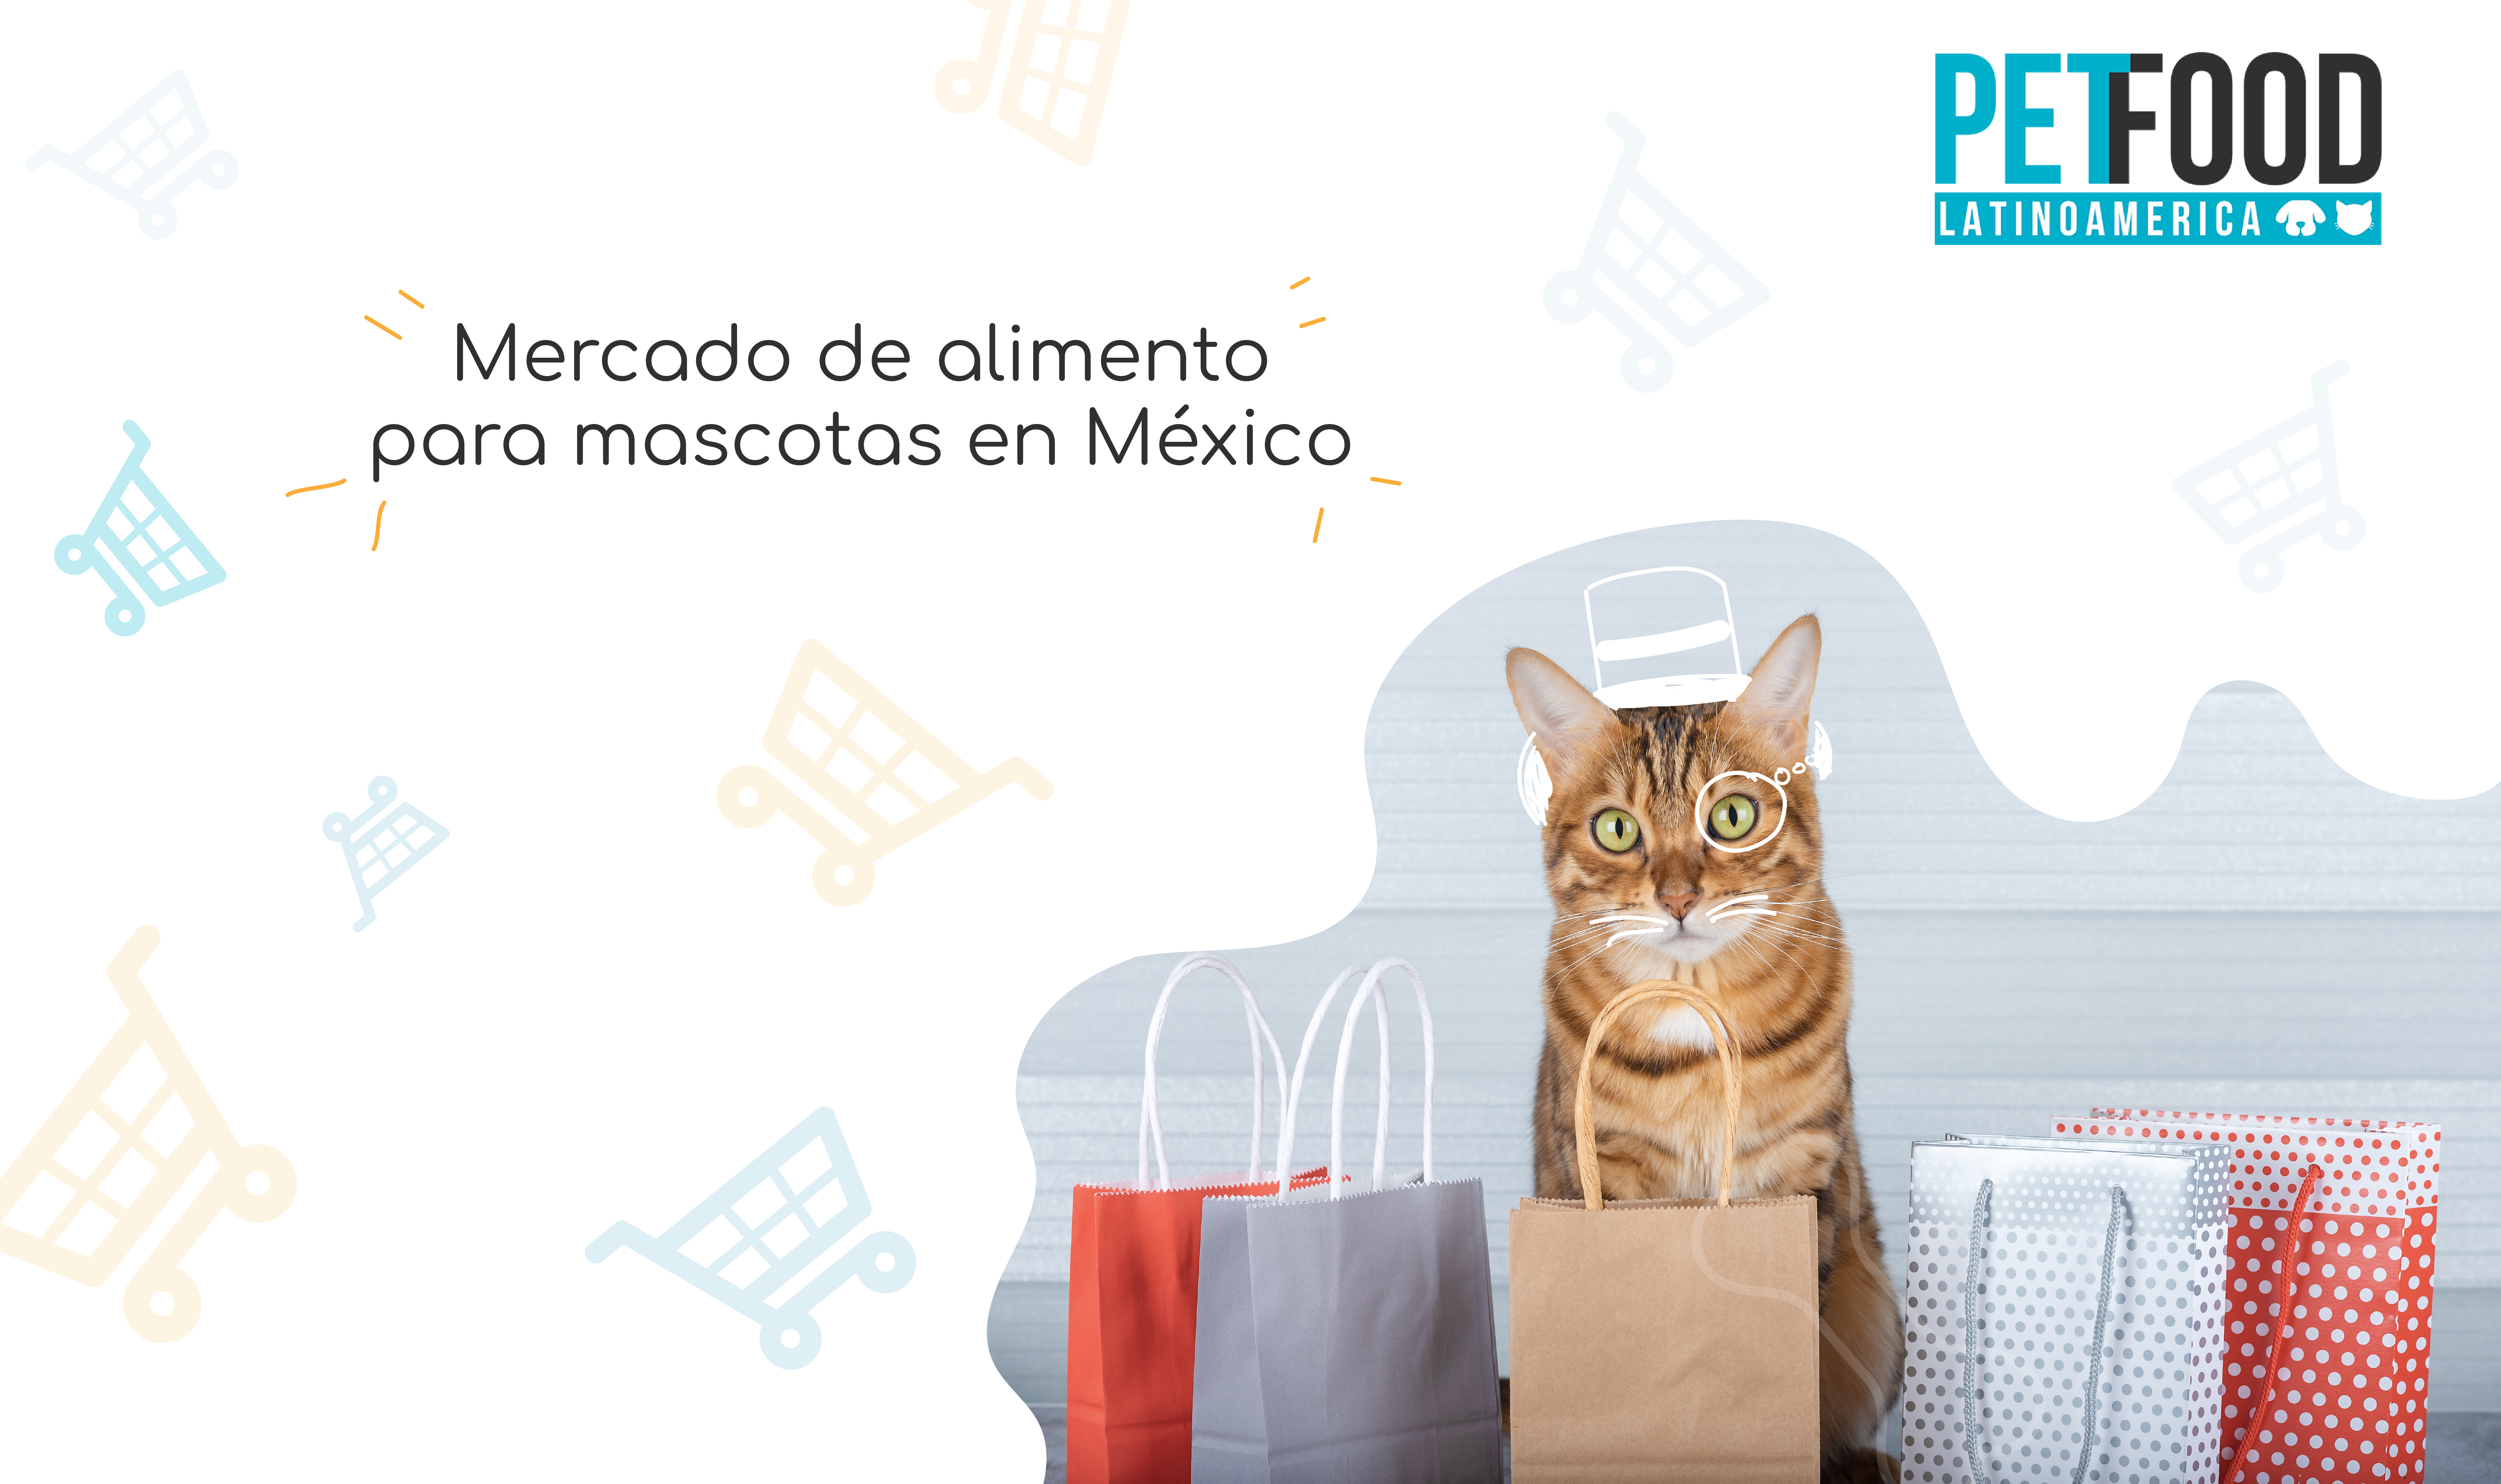 Mercado de alimento para mascotas en México